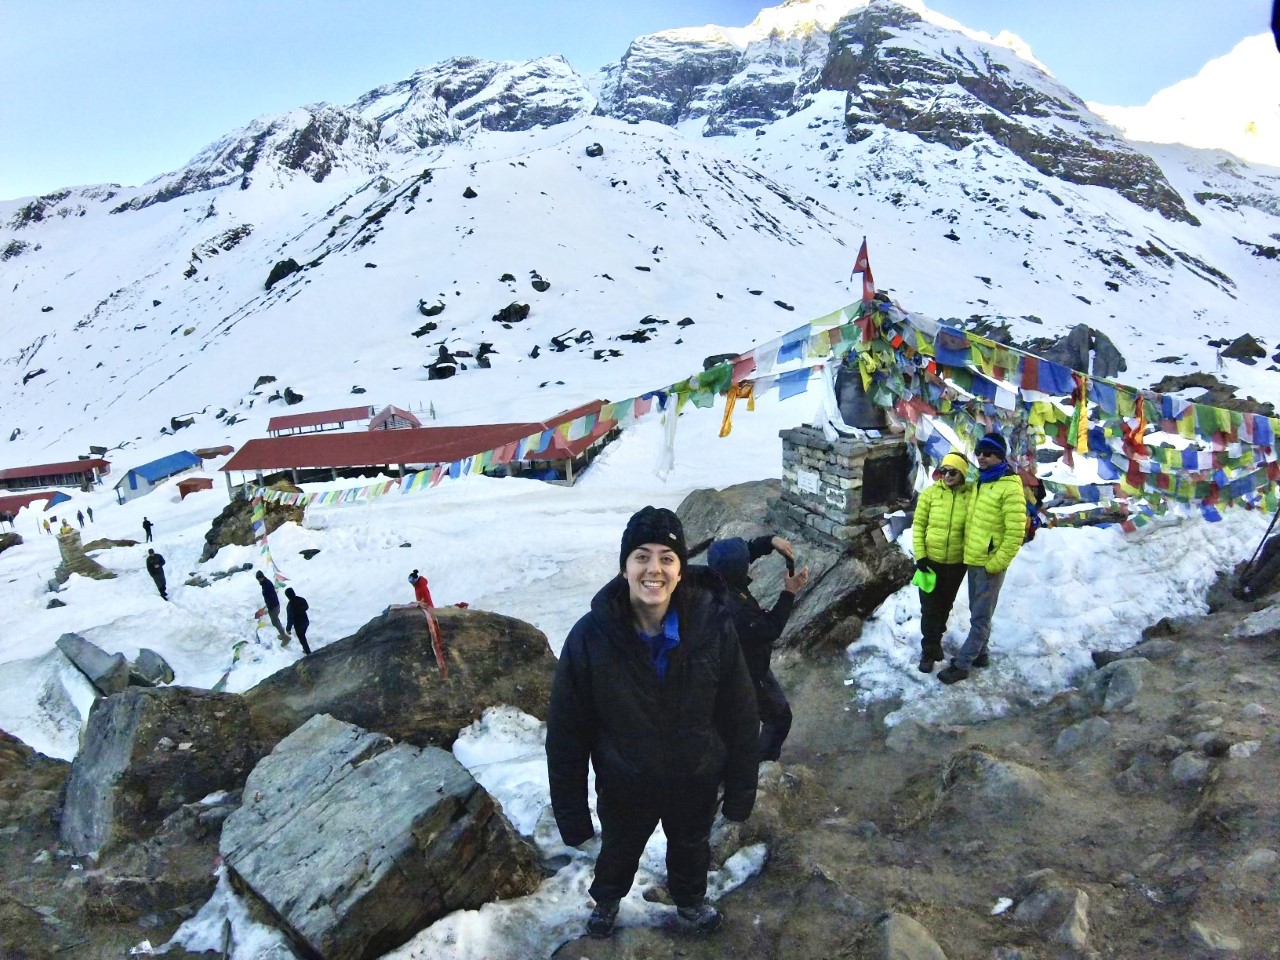 Andrea Shipton at Annapurna base camp